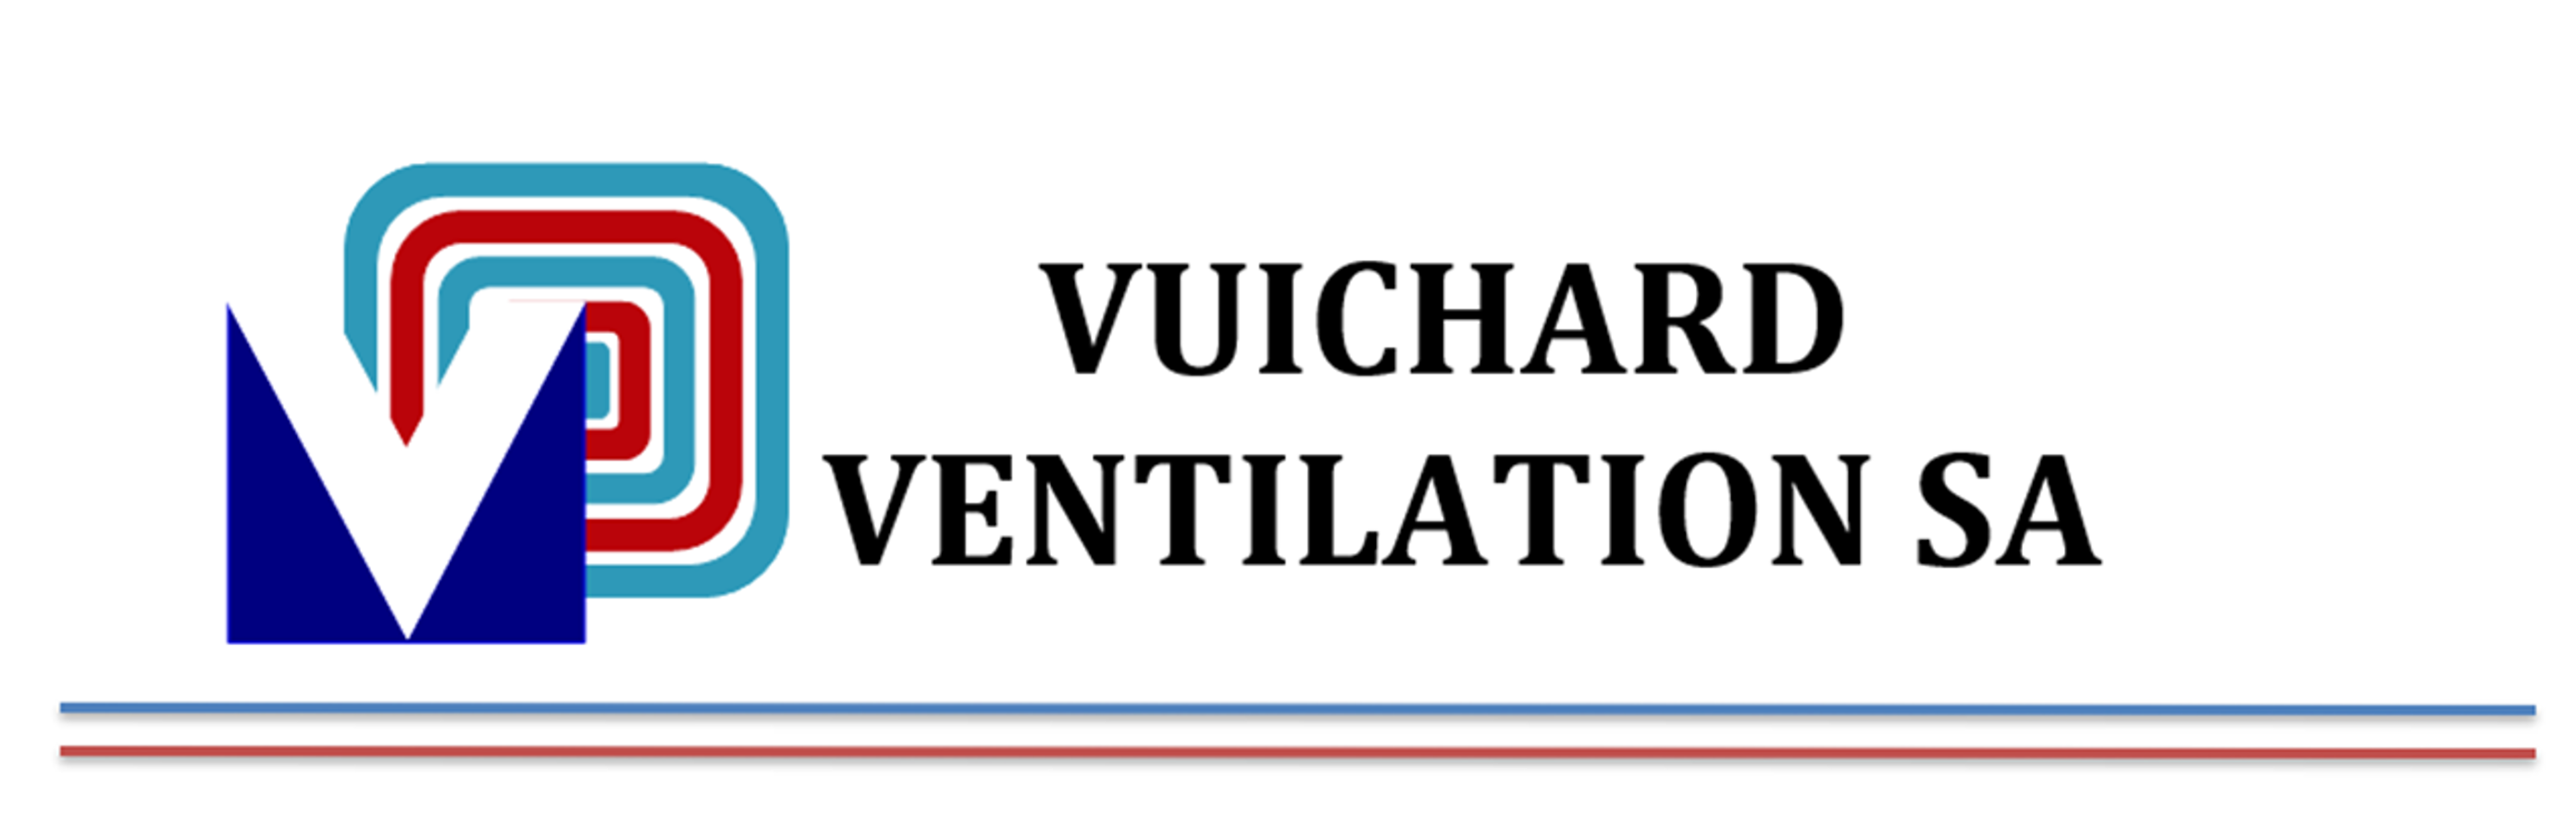 Vuichard Ventilation SA -